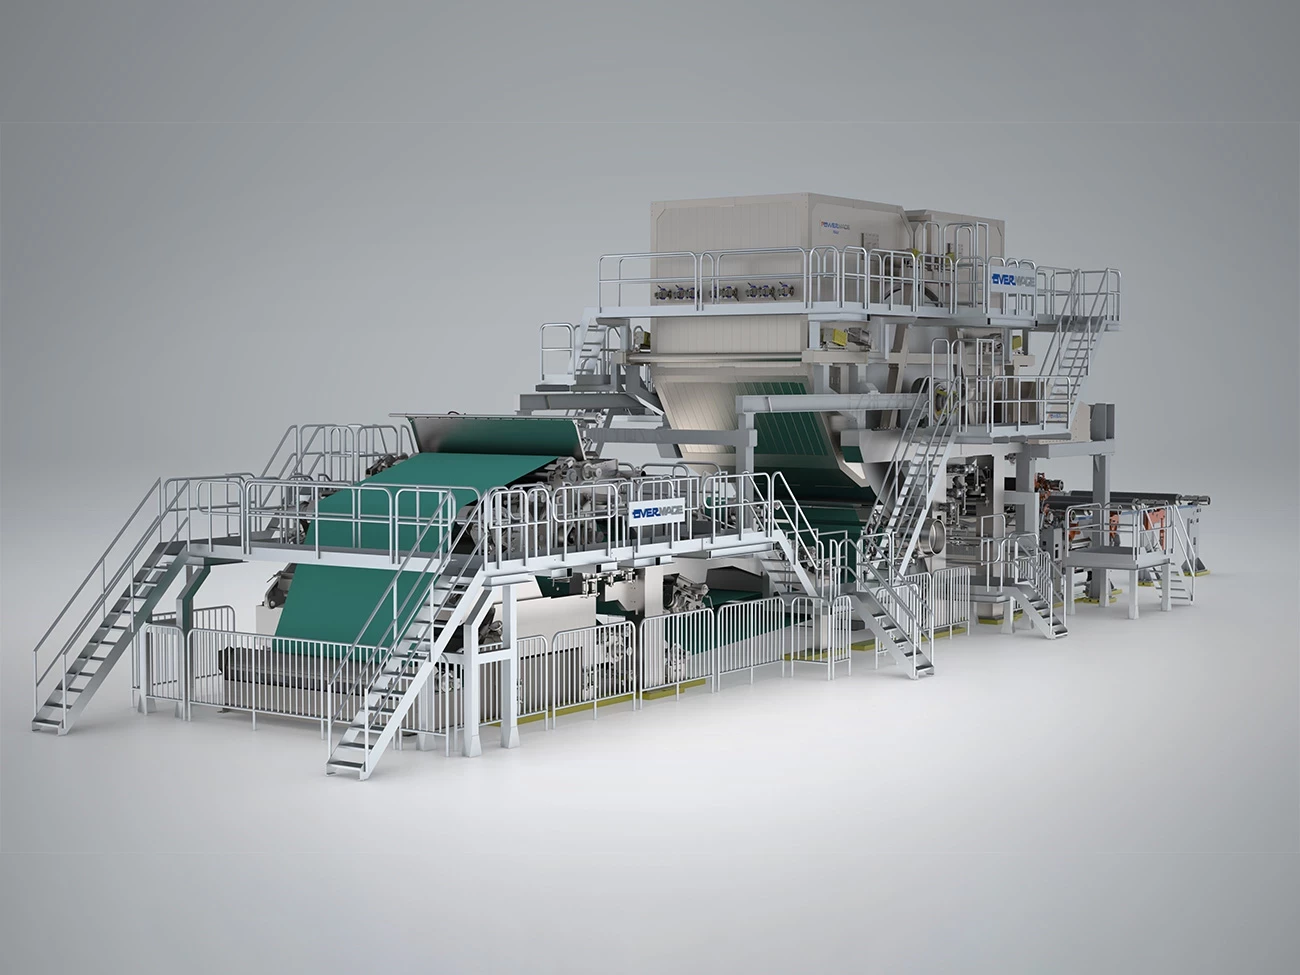 OVERMADE suministrará a ZAIN PAPER INDUSTRY un nuevo parque industrial completo para la producción de papel tisú 